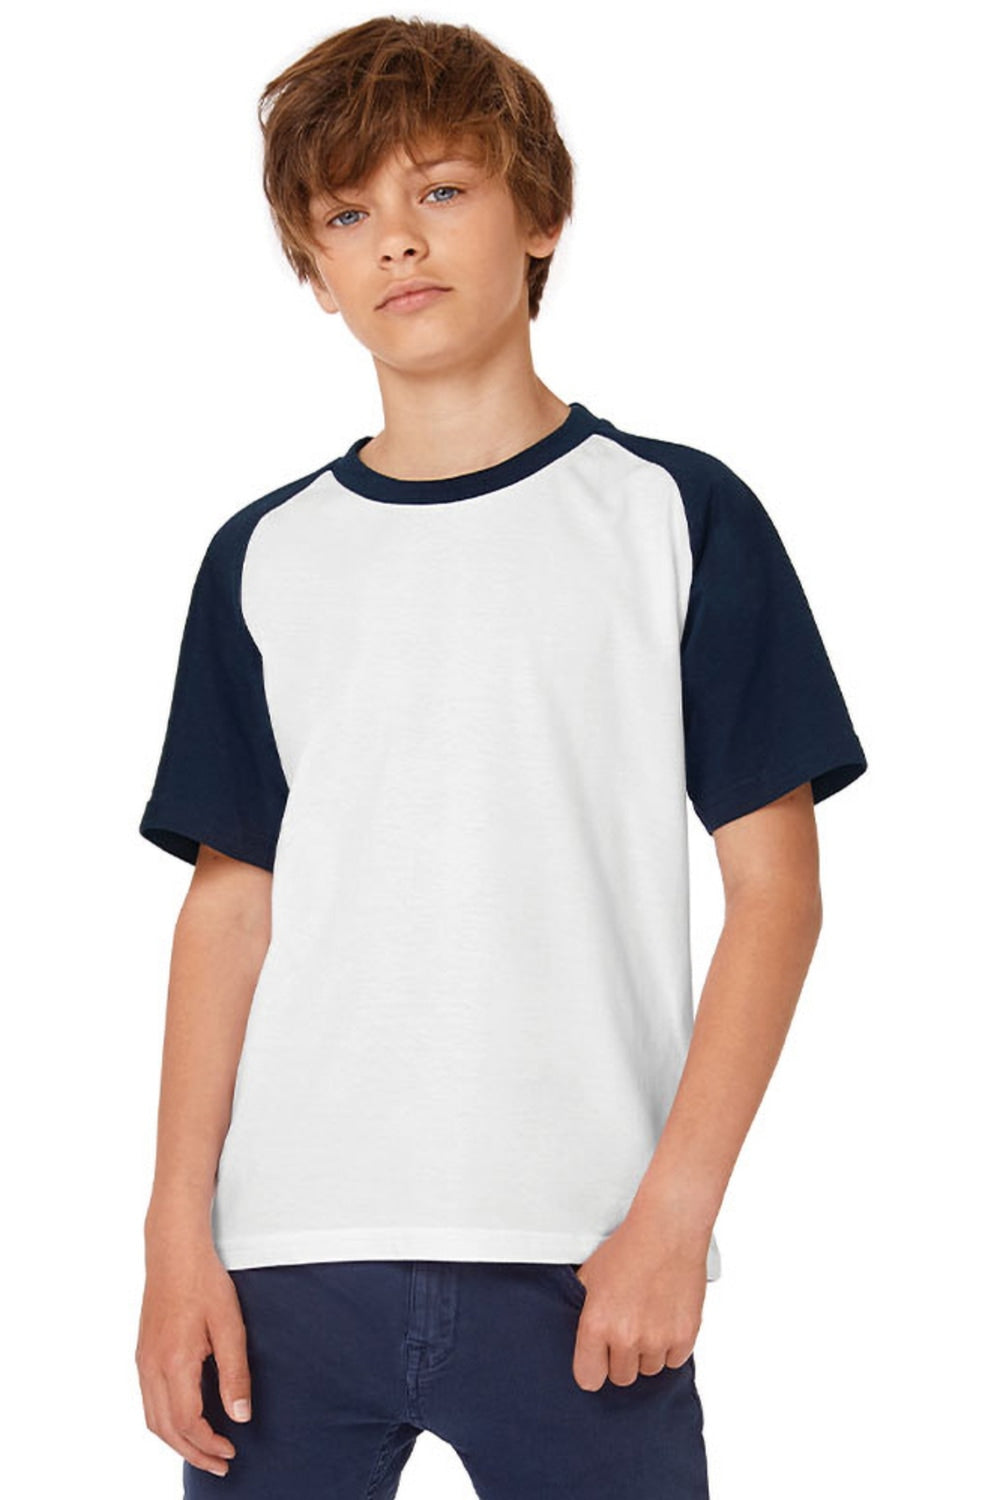 Childrens Boys Short Sleeve Baseball T-Shirt - White/Navy